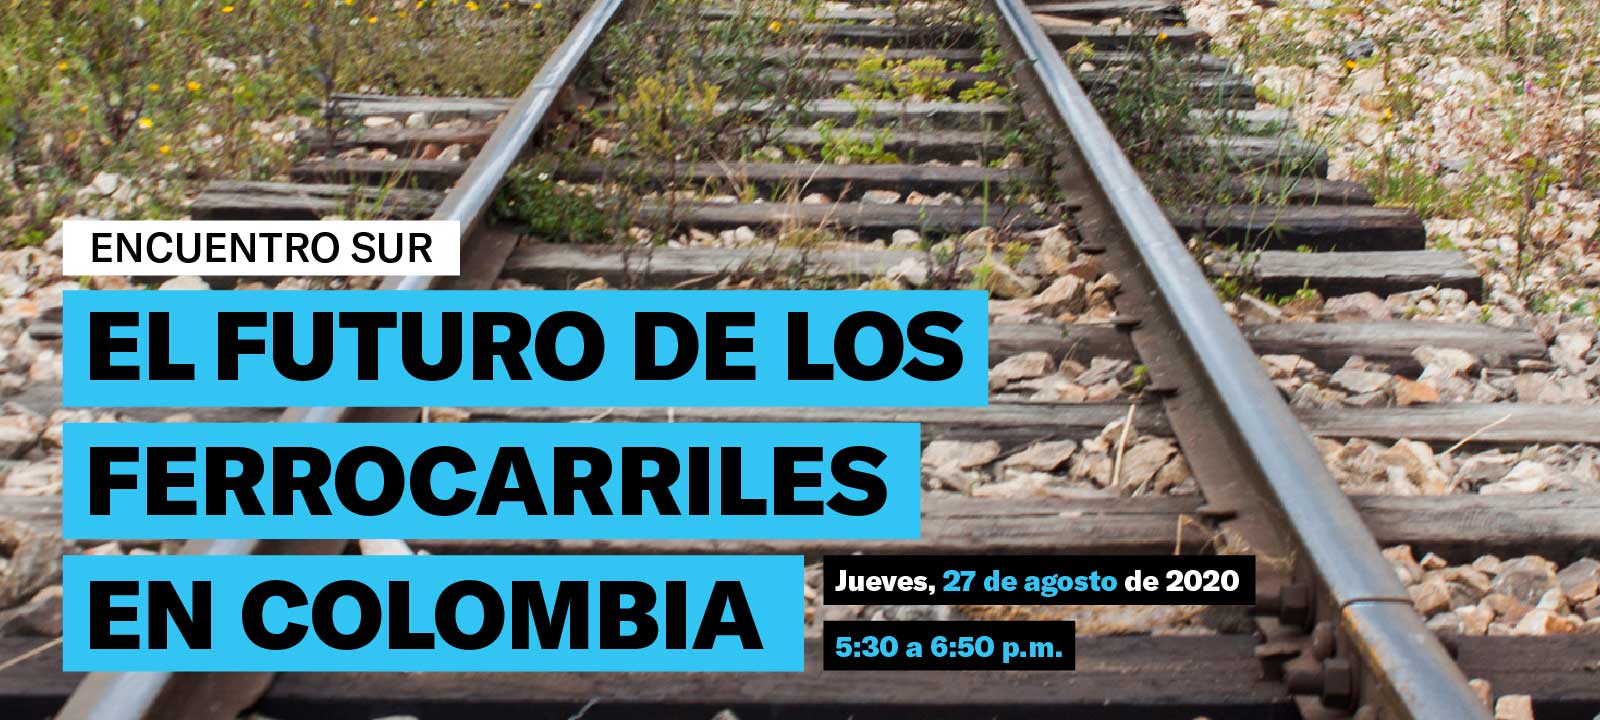 El futuro de los ferrocarriles en Colombia